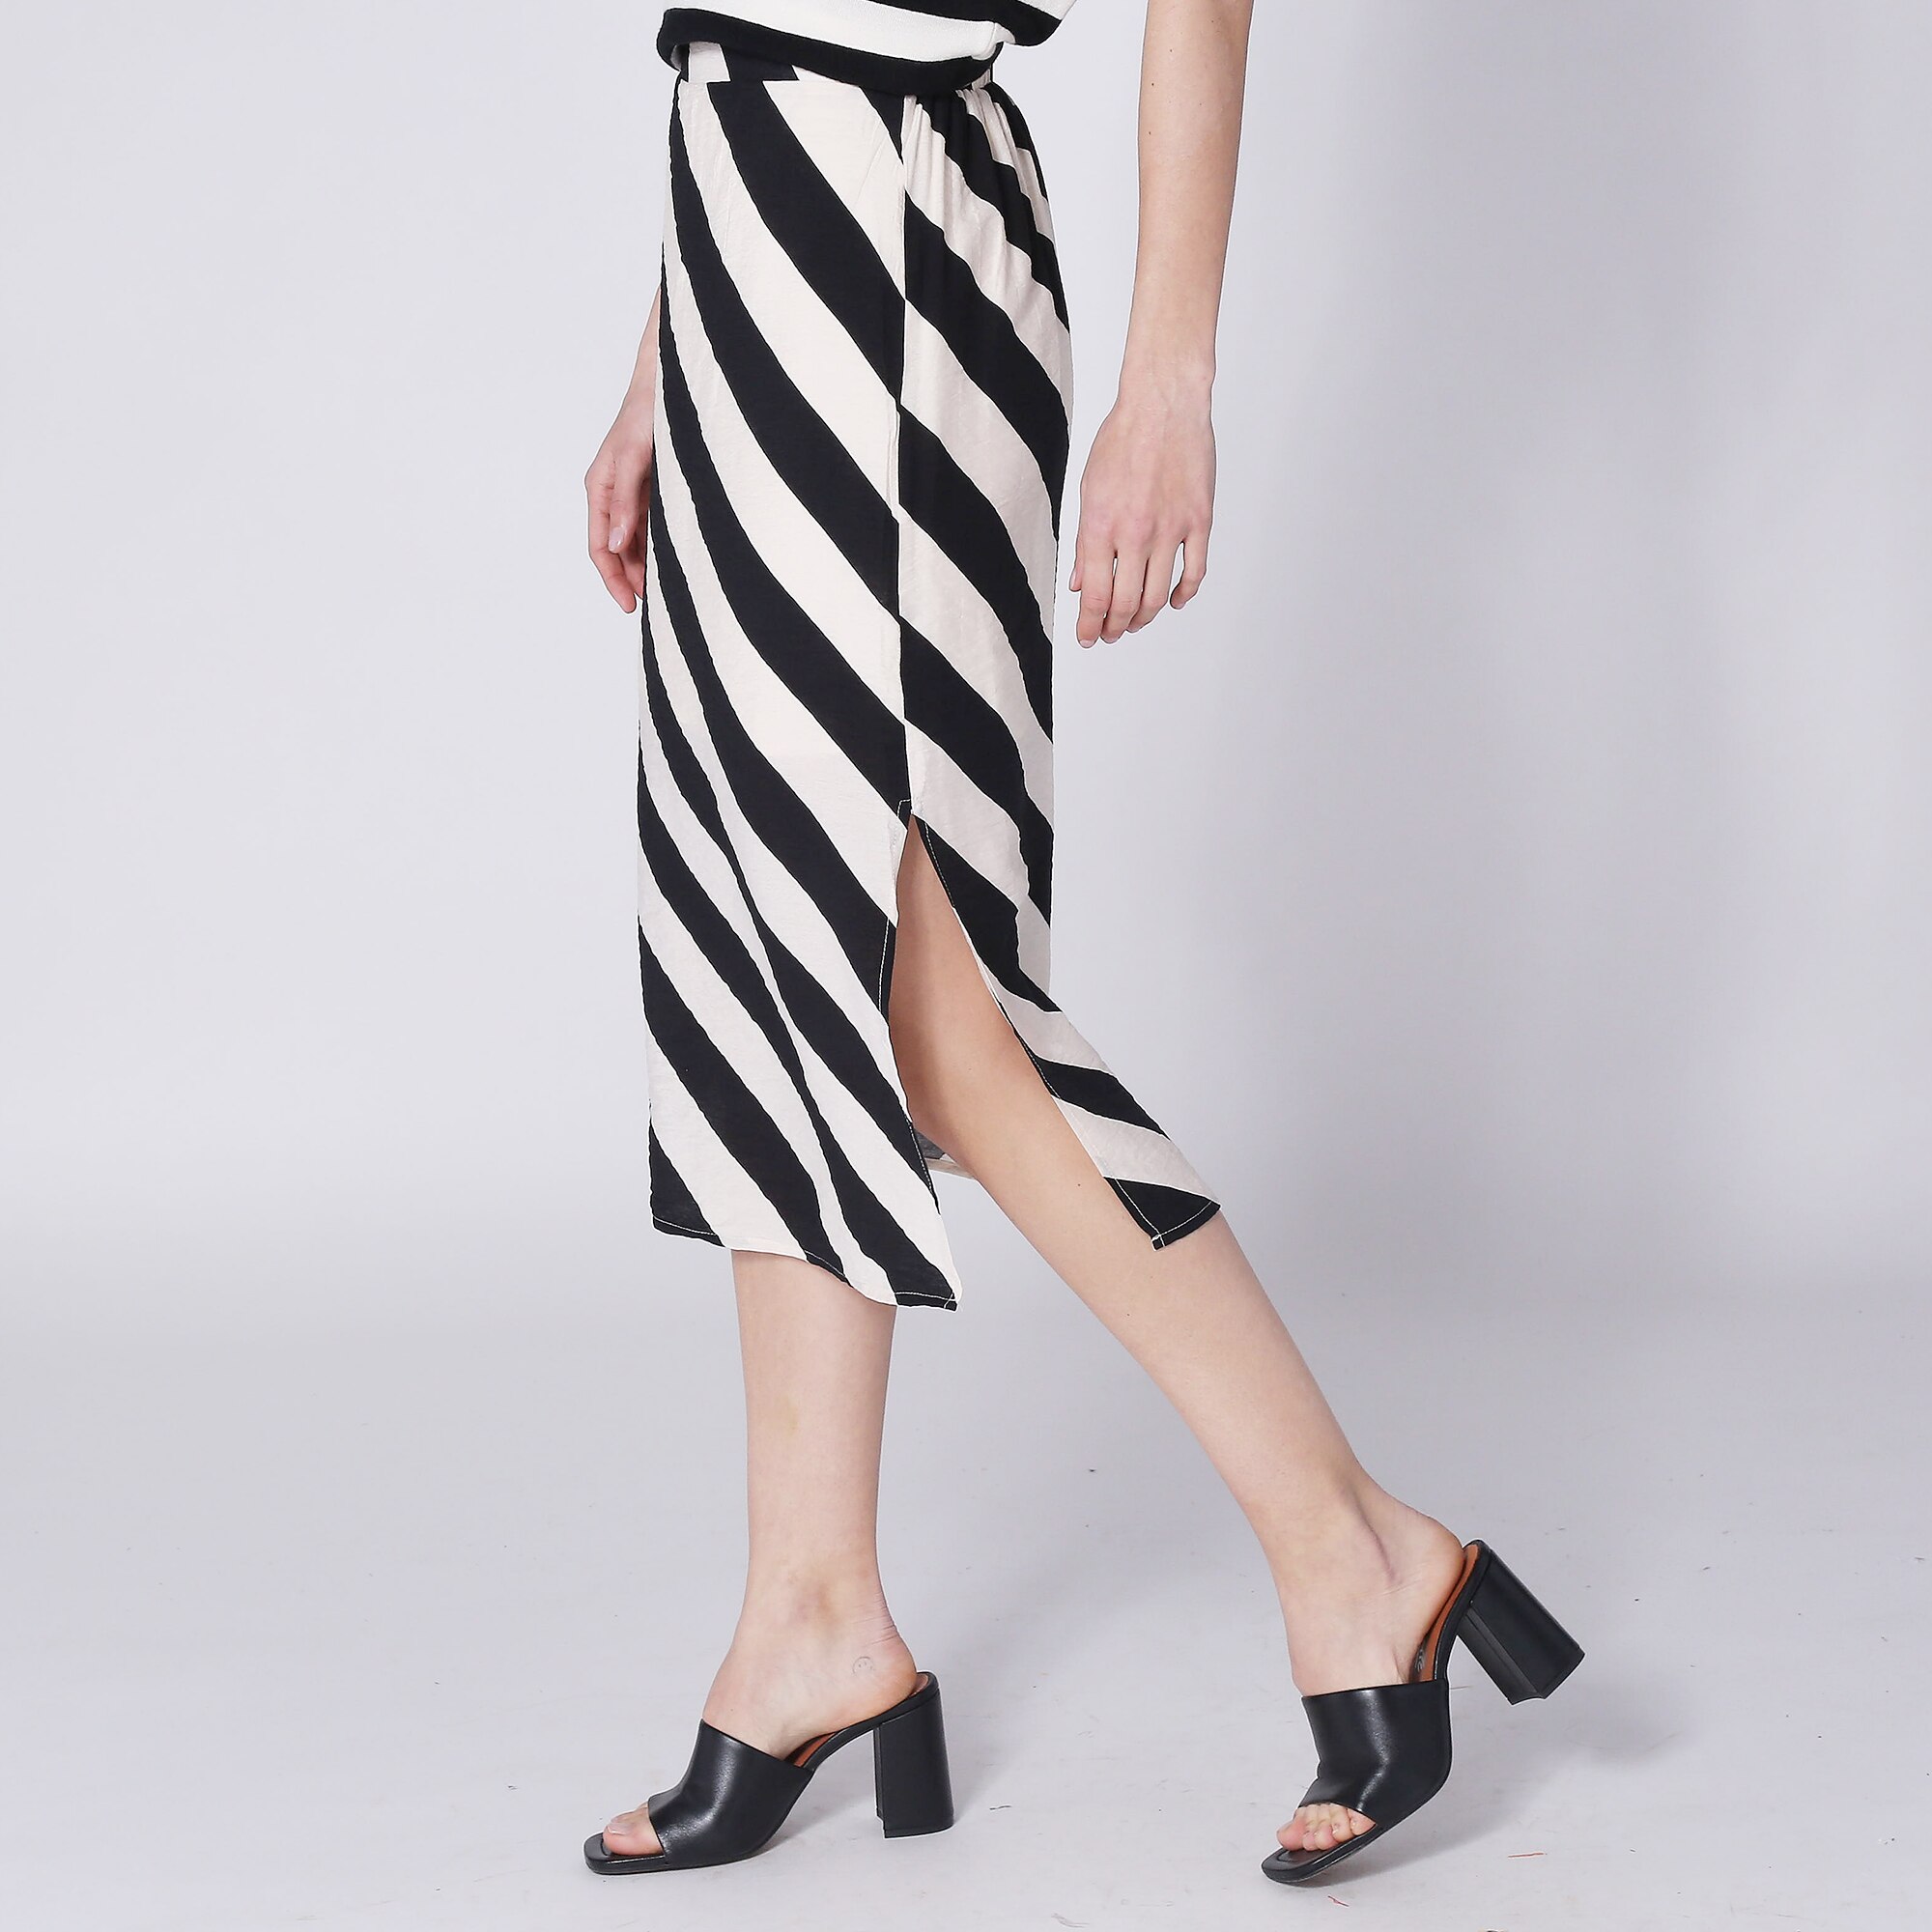 Compañía Fantástica Crepe Stripe Midi Skirt with Side Slit